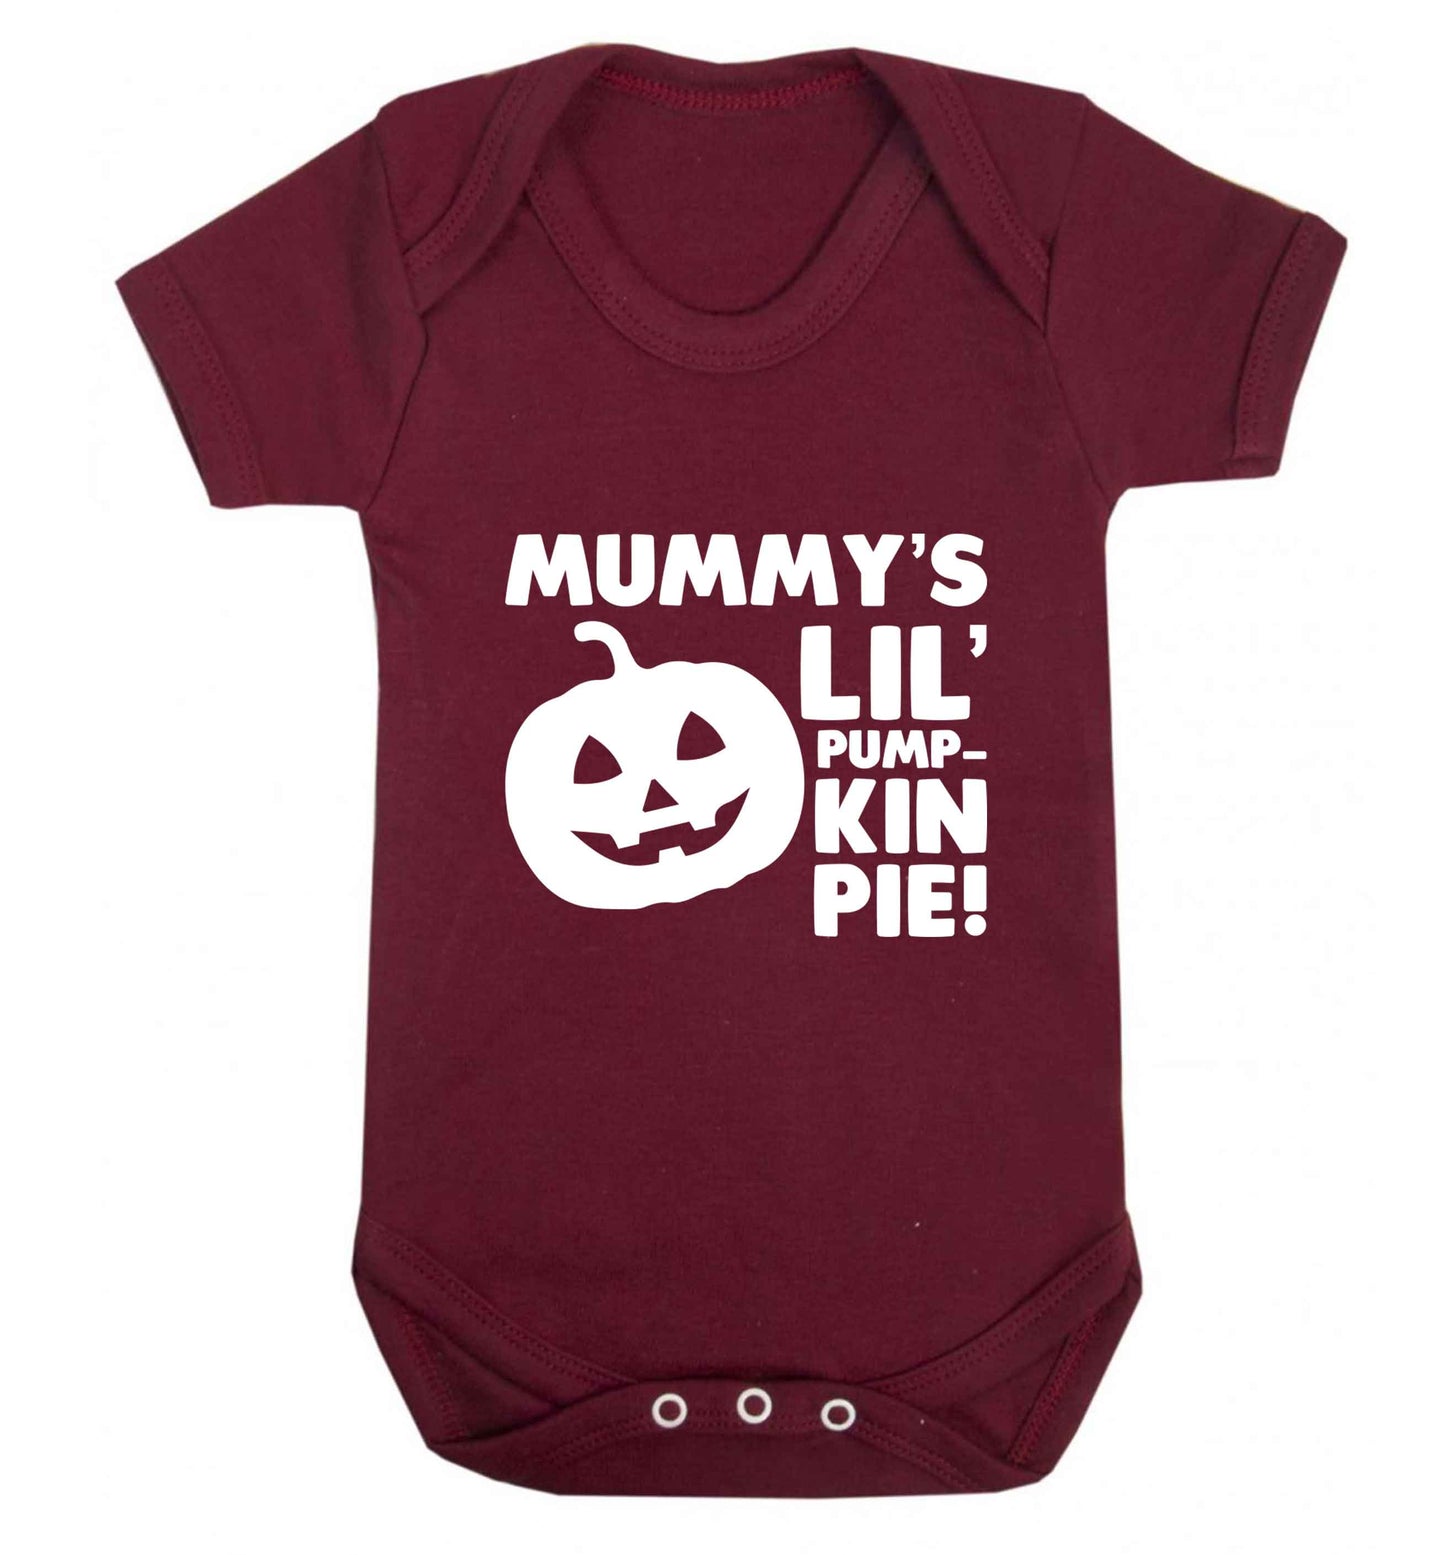 Mummy's lil' pumpkin pie baby vest maroon 18-24 months